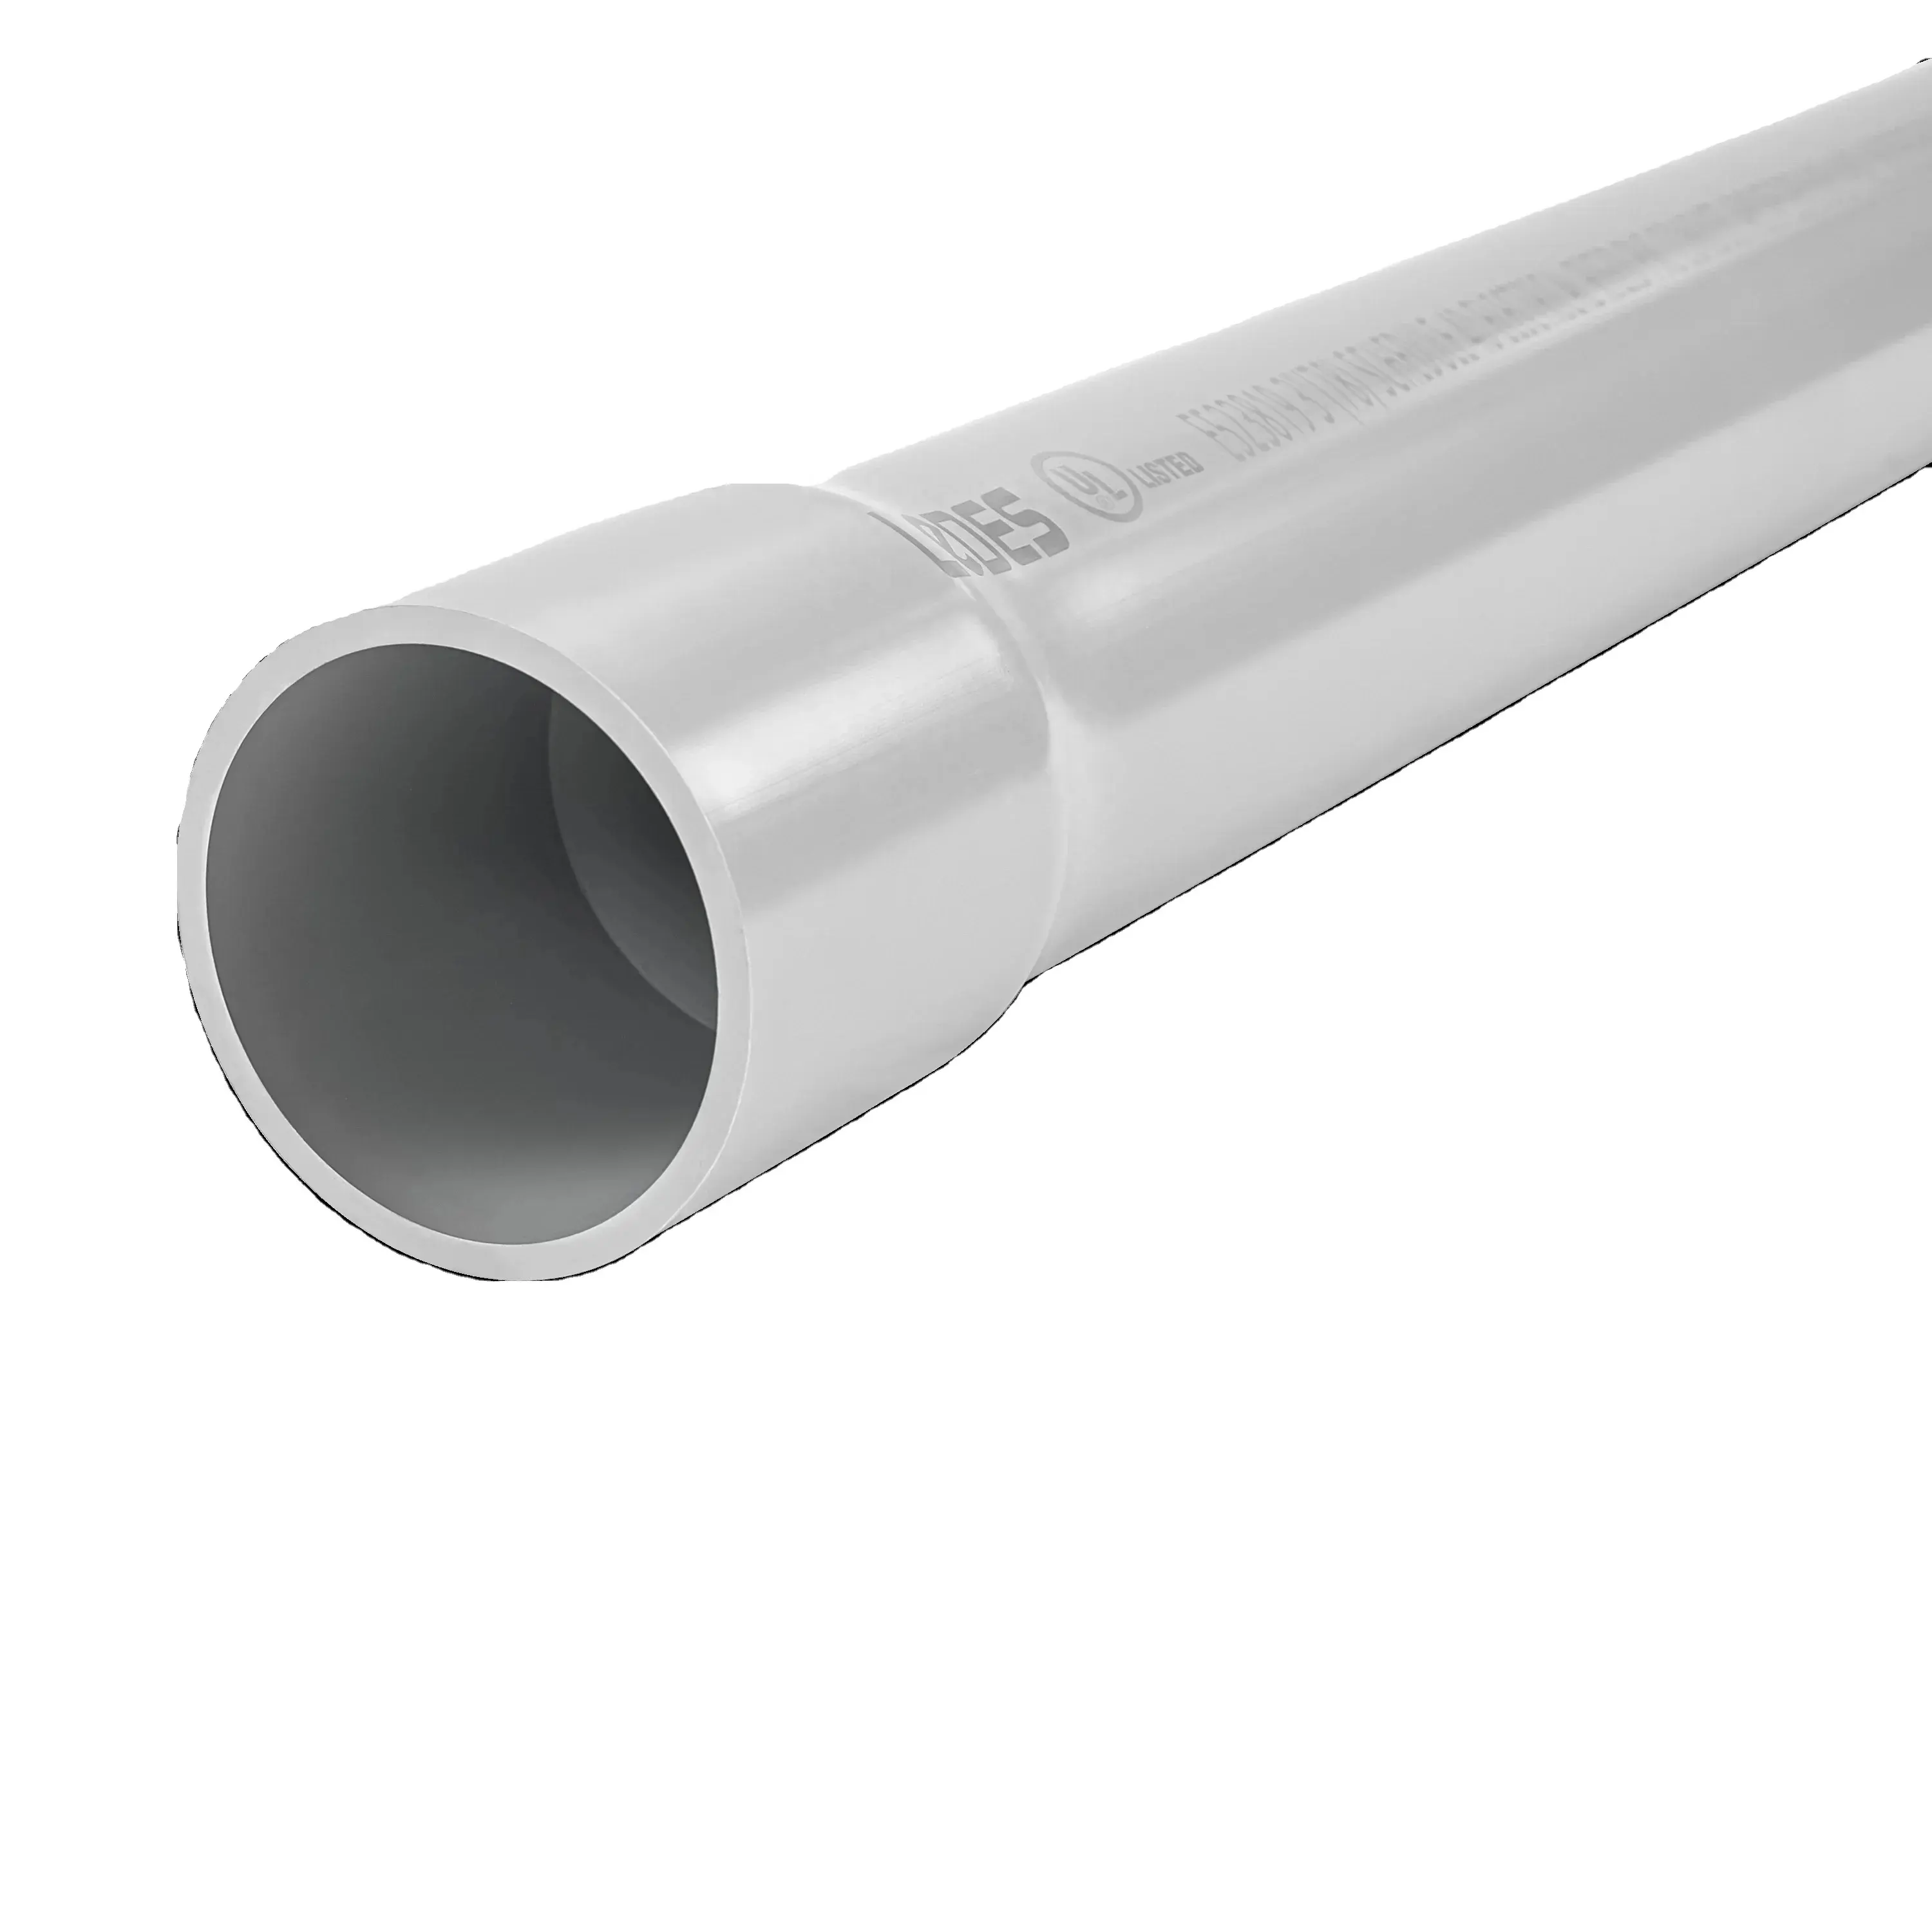 Tubo de PVC LEDES 3" Sch 40 FT4 com classificação de fogo, tubo de PVC elétrico resistente à luz solar com certificação UL 651 para projetos de fiação